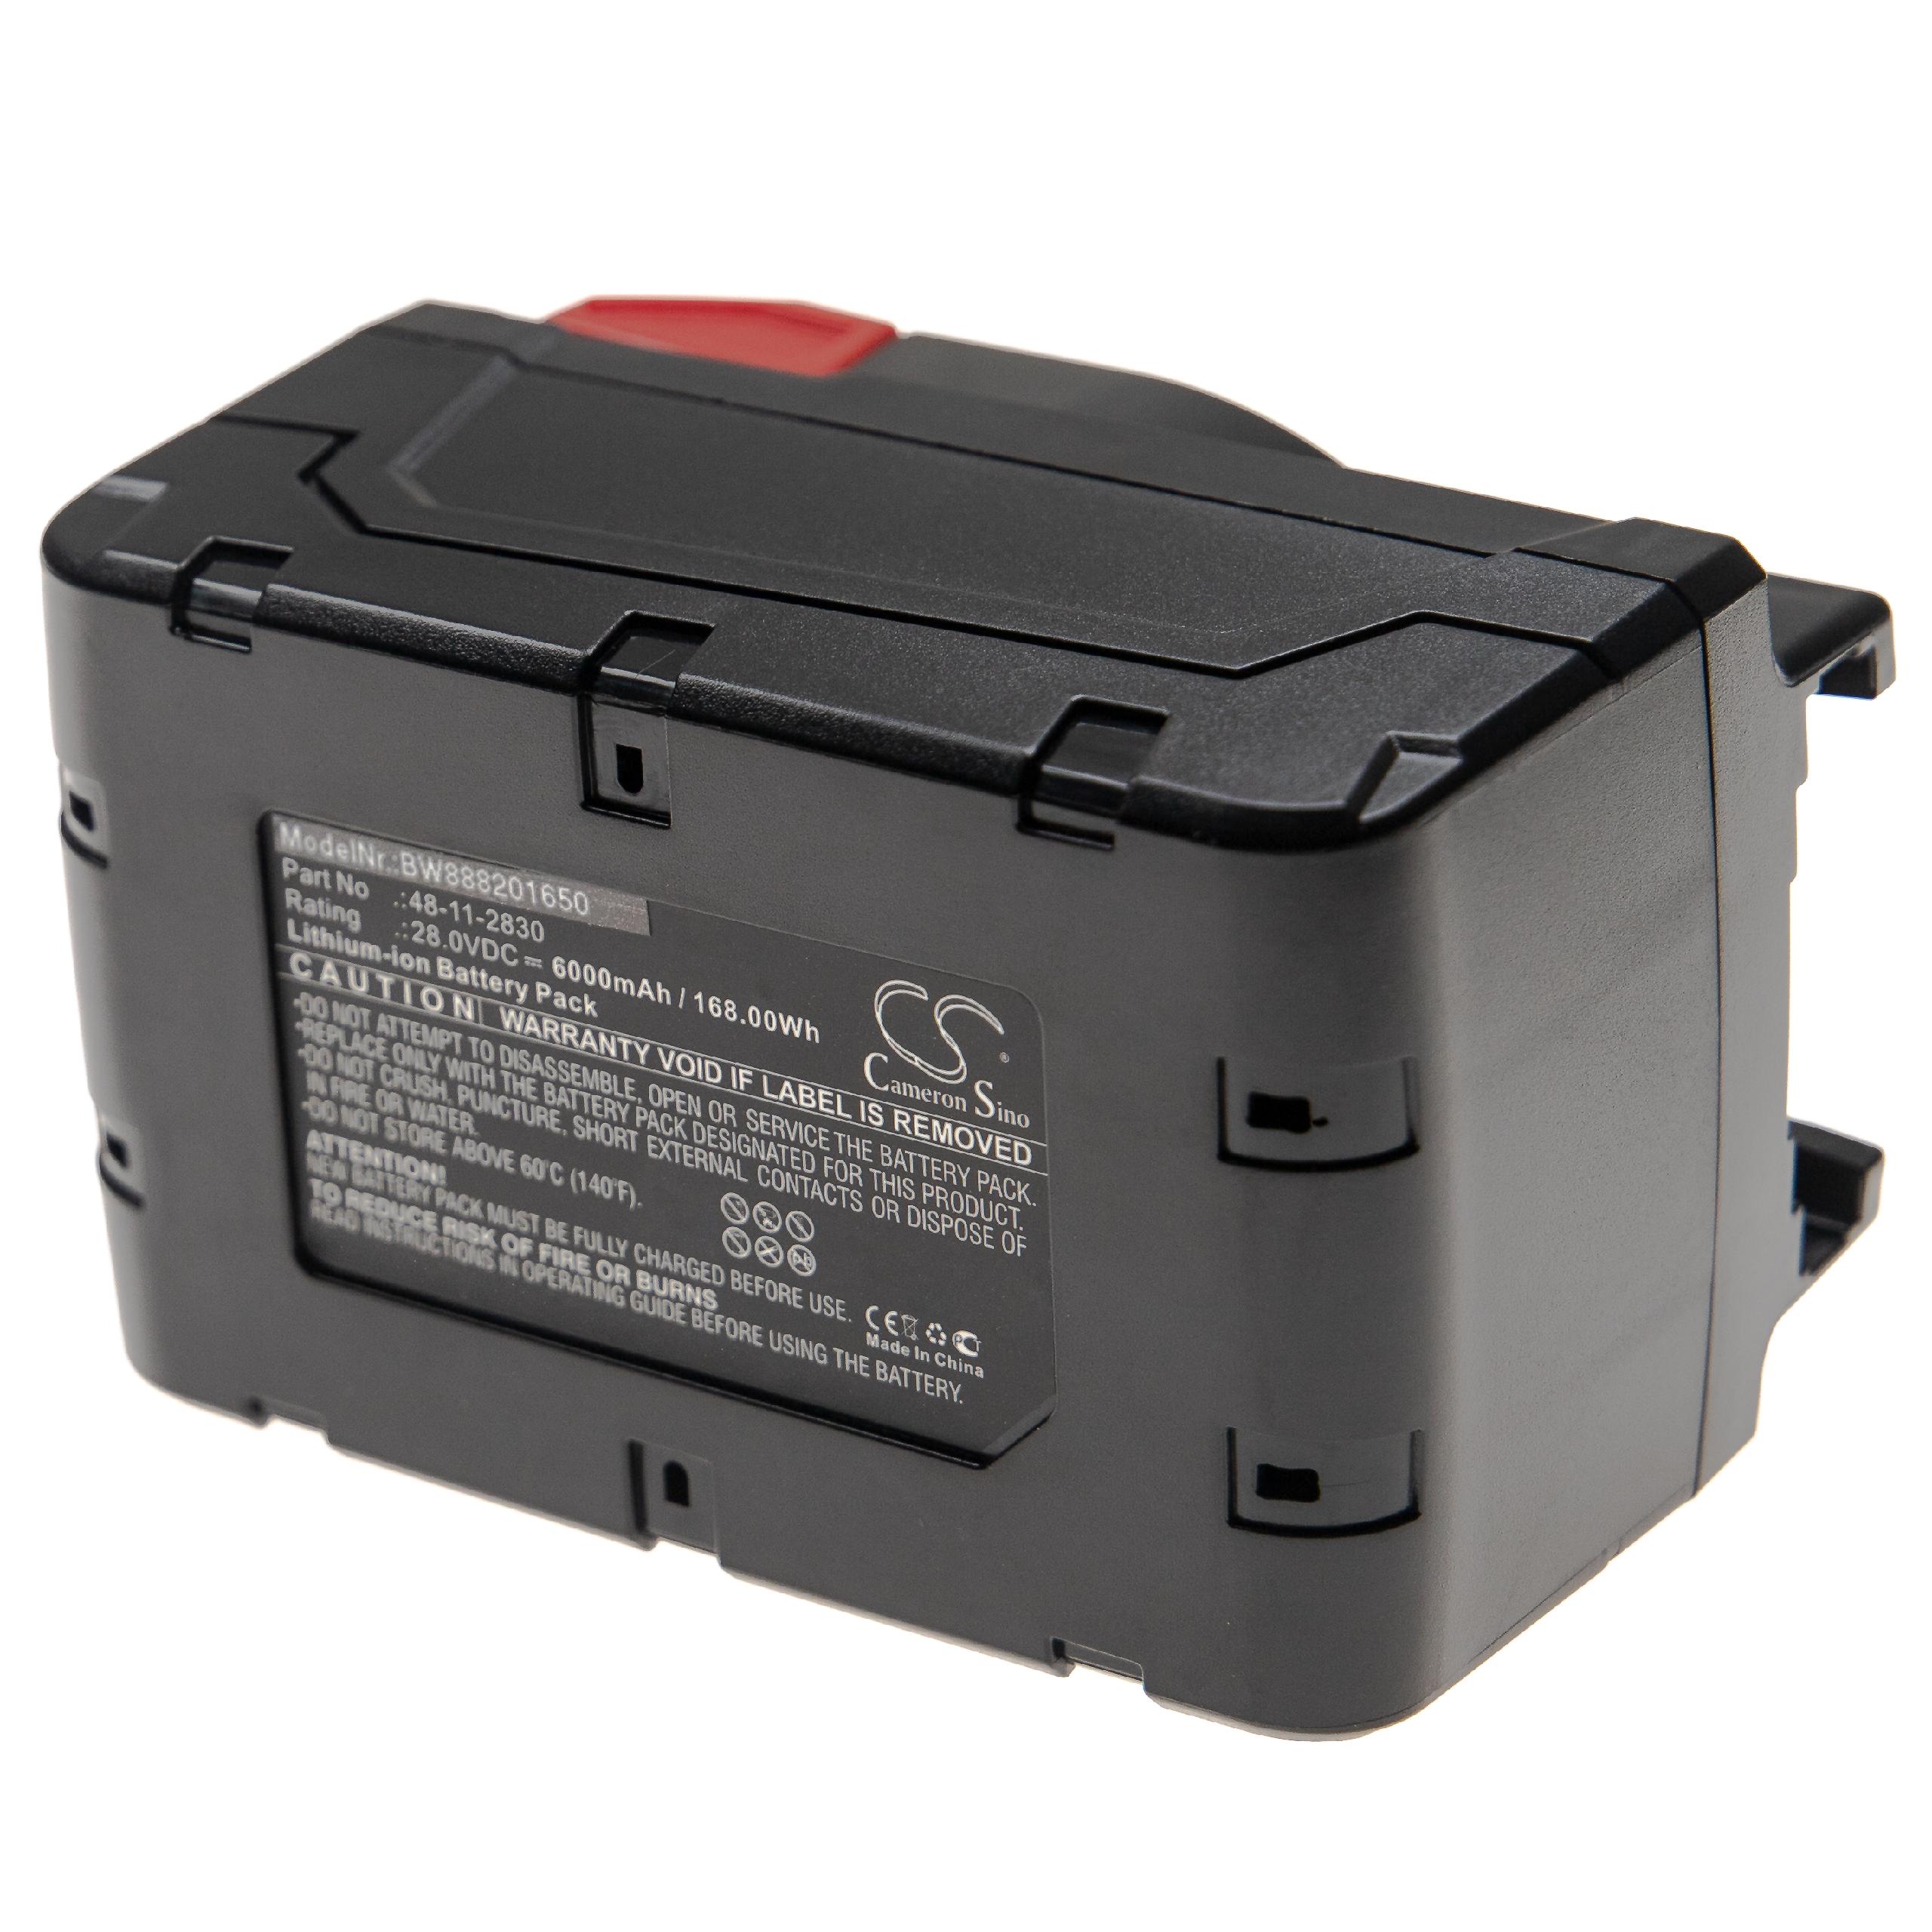 Batteria per attrezzo sostituisce AEG / Milwaukee 48-11-2830, 48-11-2850, 48-11-1830 - 6000 mAh, 28 V, Li-Ion